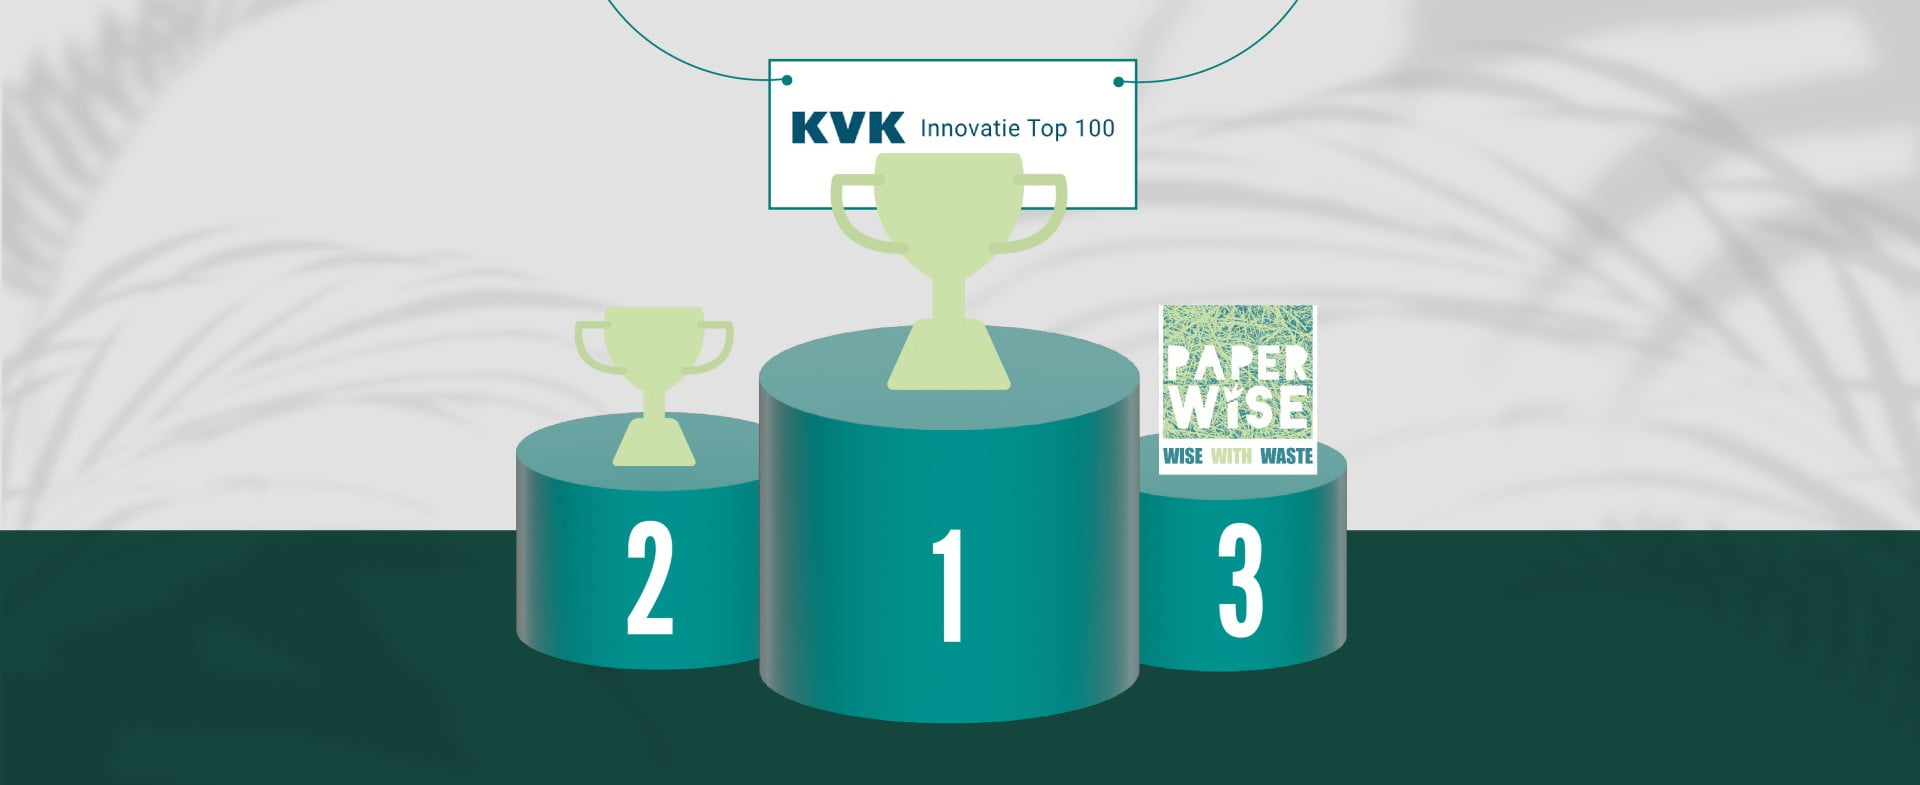 PaperWise obtiene el tercer puesto en el Top 100 de Innovación de la Cámara de Comercio